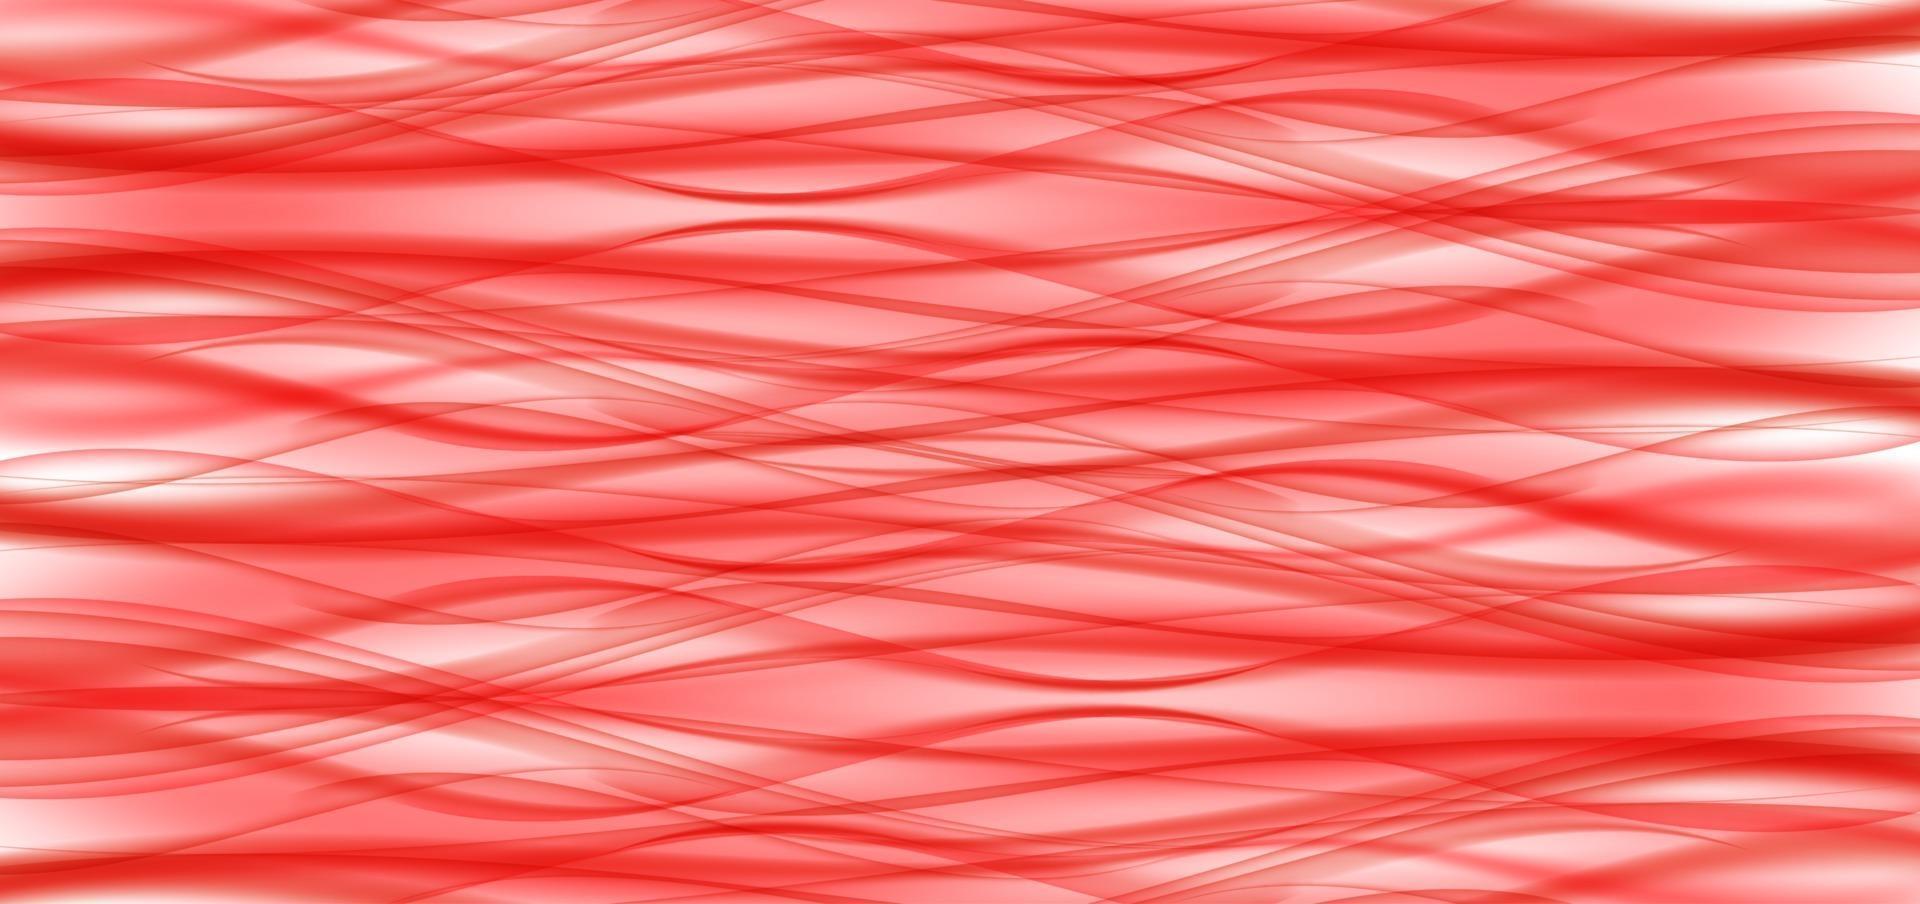 vague rouge abstraite sur fond blanc vecteur